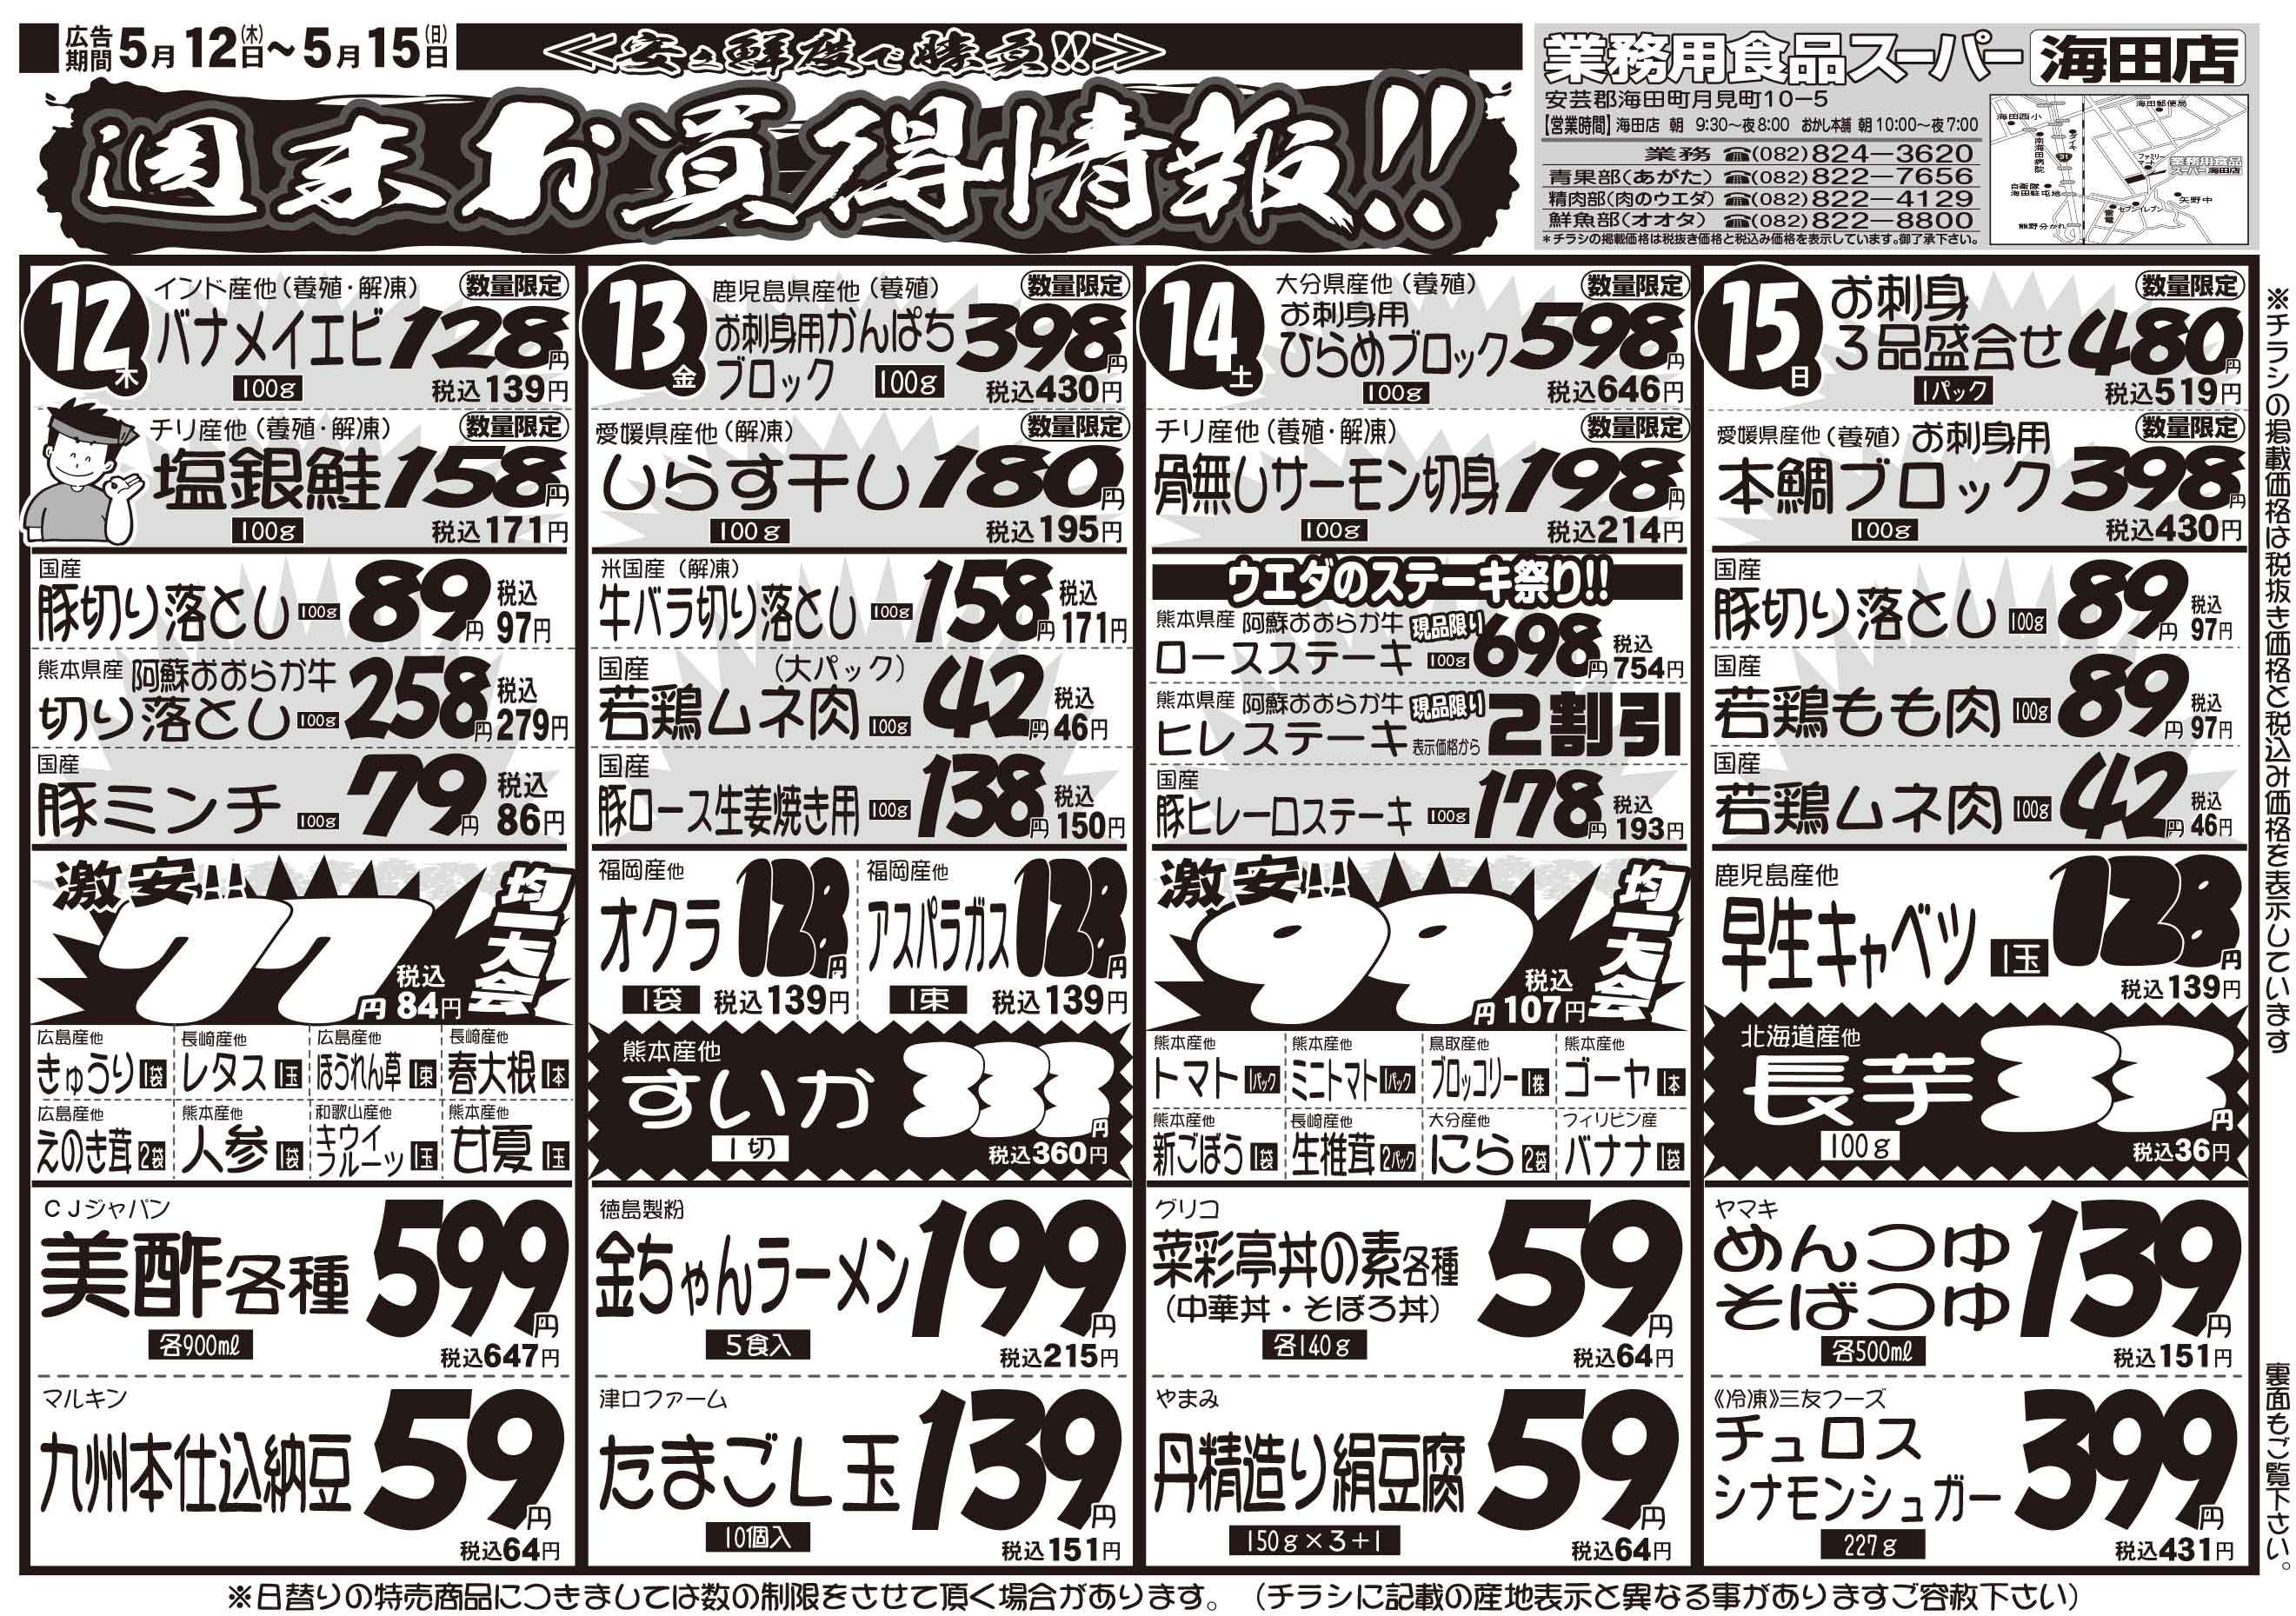 業務用食品スーパー海田店 5/12-15 週末お買い得情報チラシオモテ